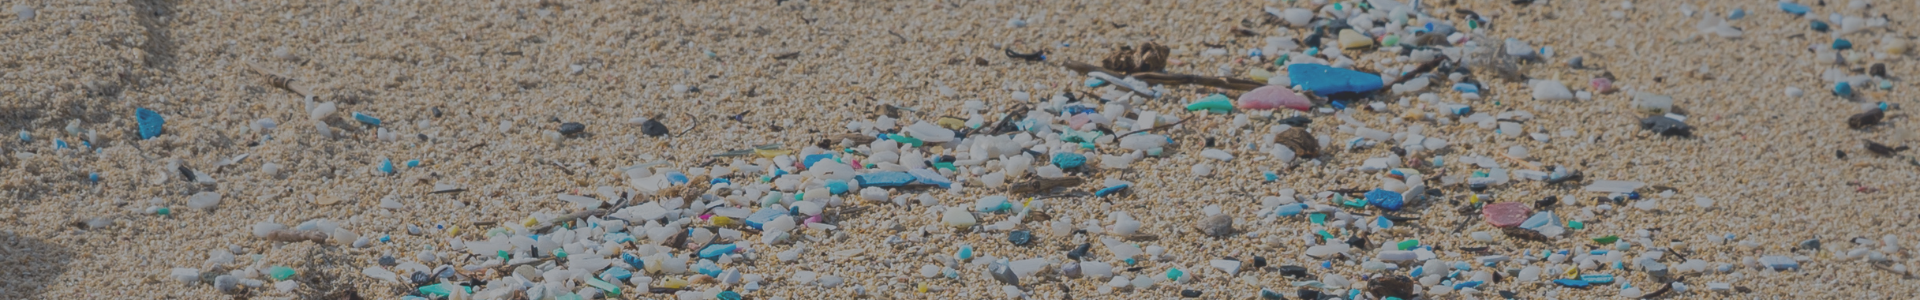 Dictuc en la prensa: Plásticos en Isla de Pascua